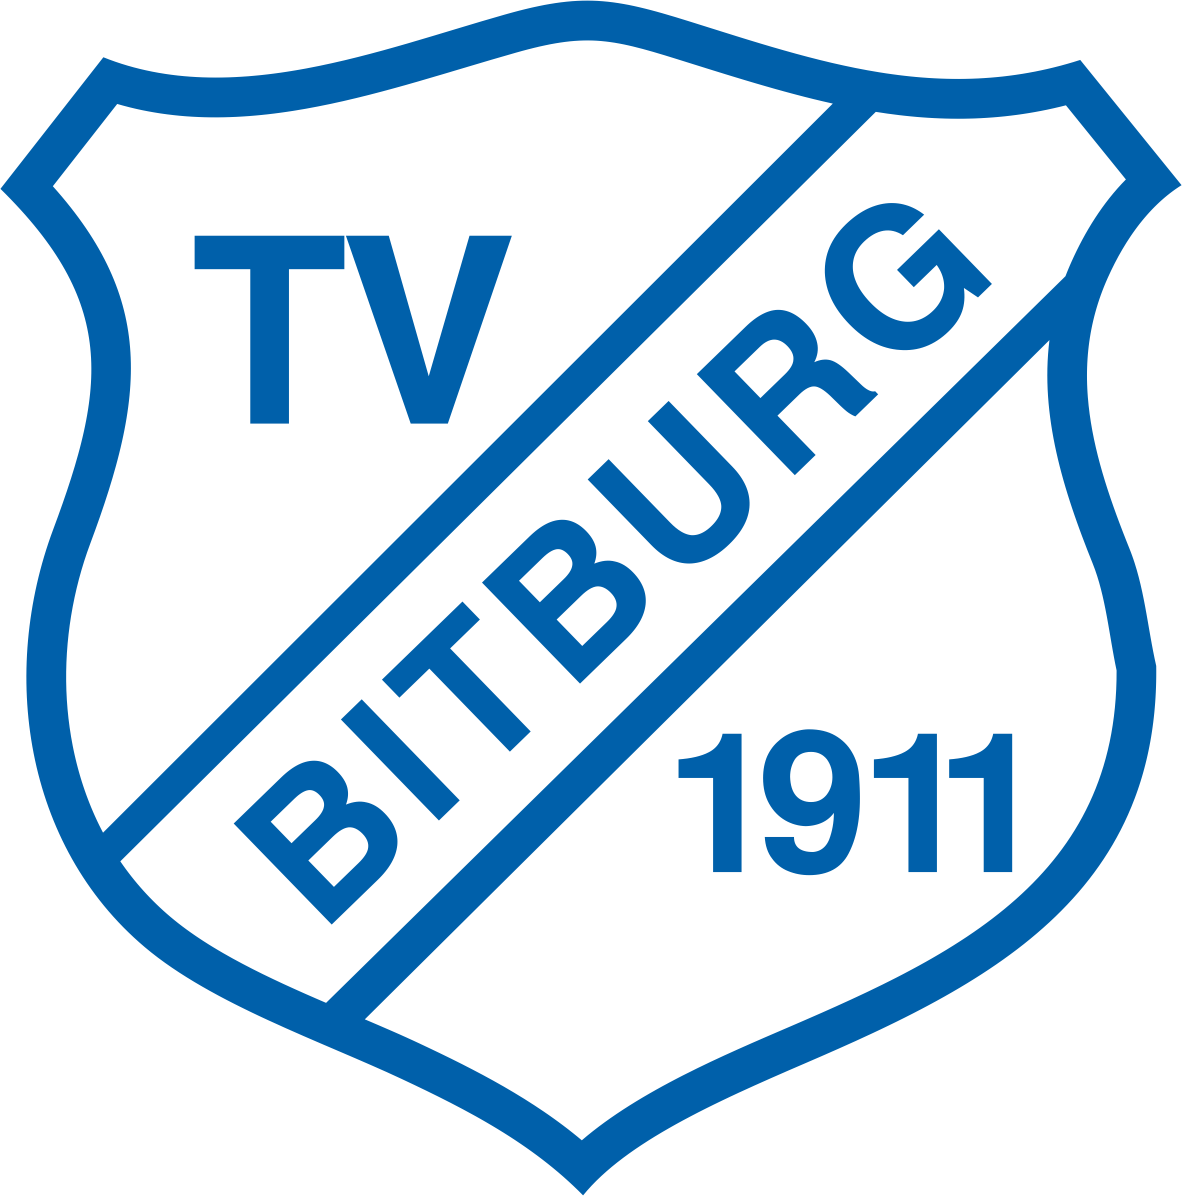 Turnverein Bitburg 1911 e.V. Logo